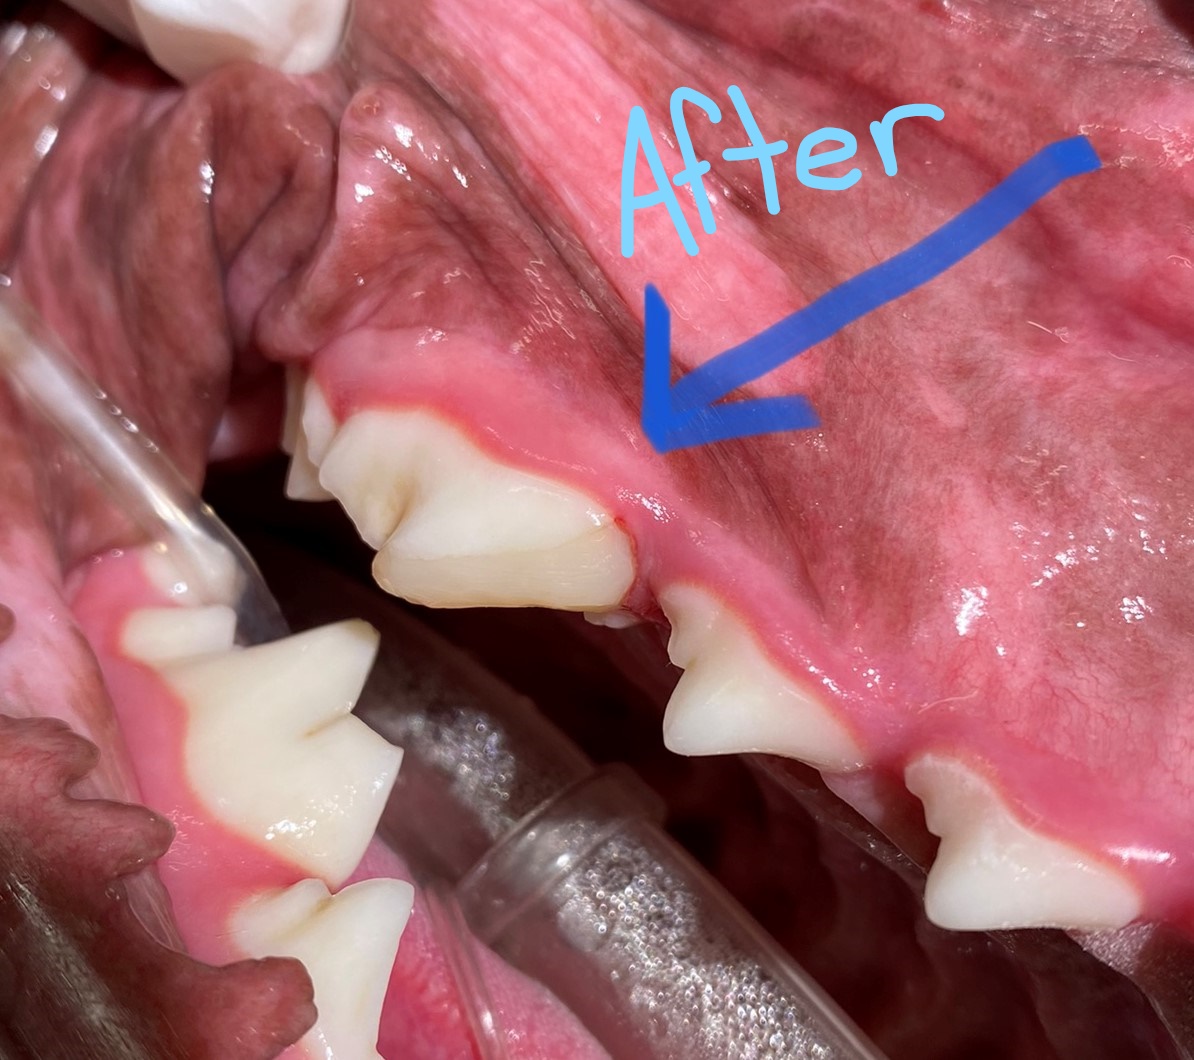 after dental restoration